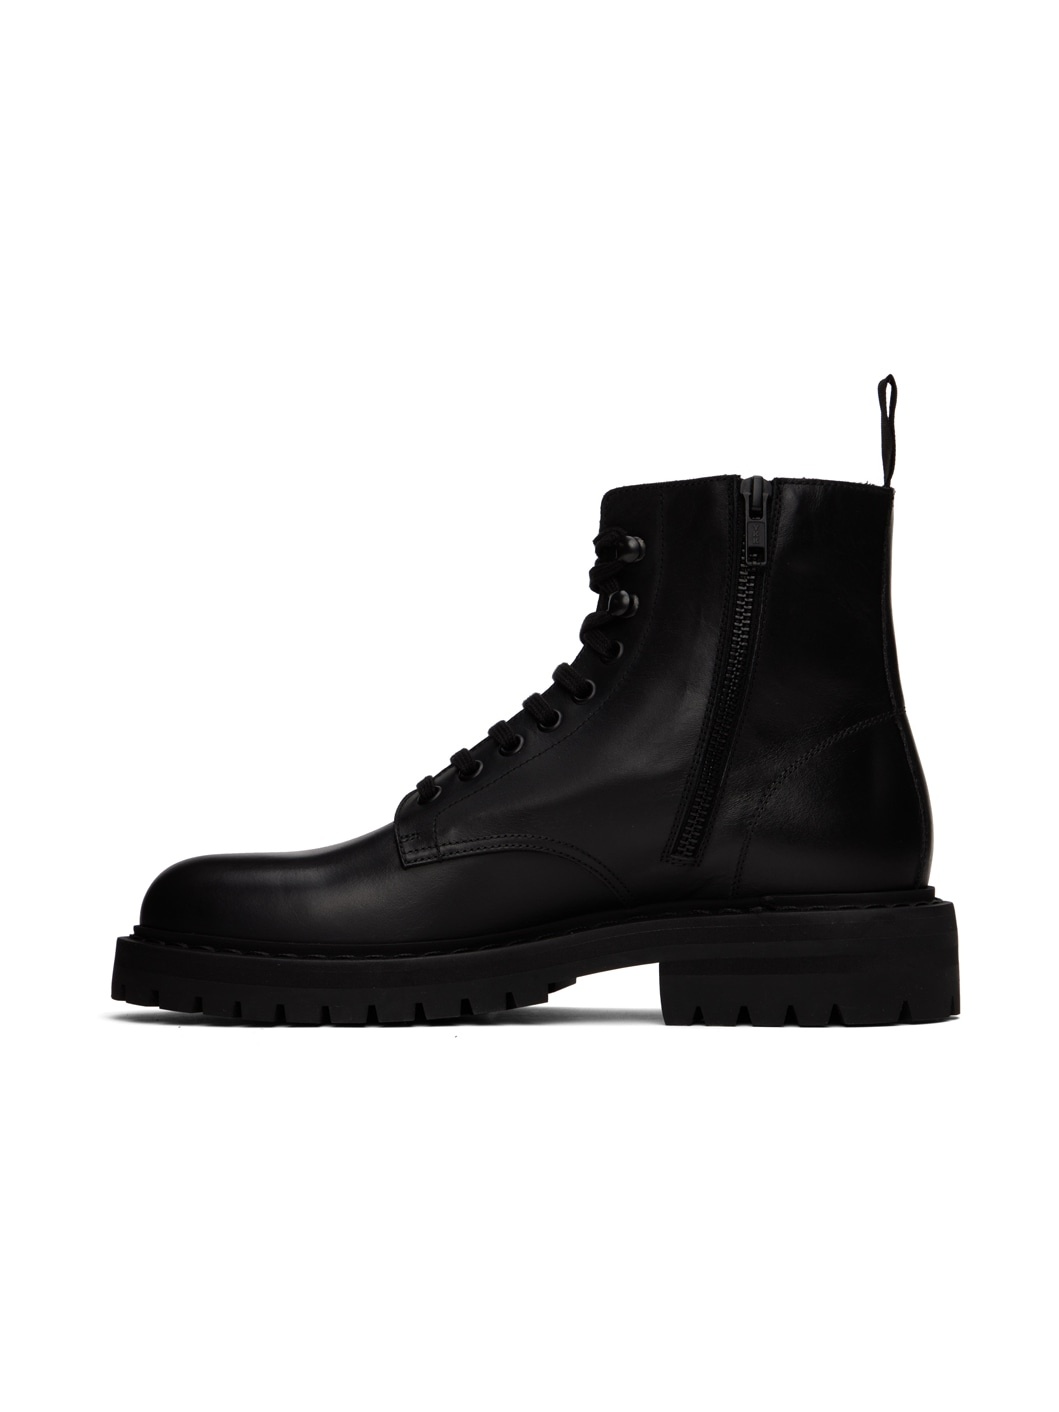 Black Combat Boots - 3